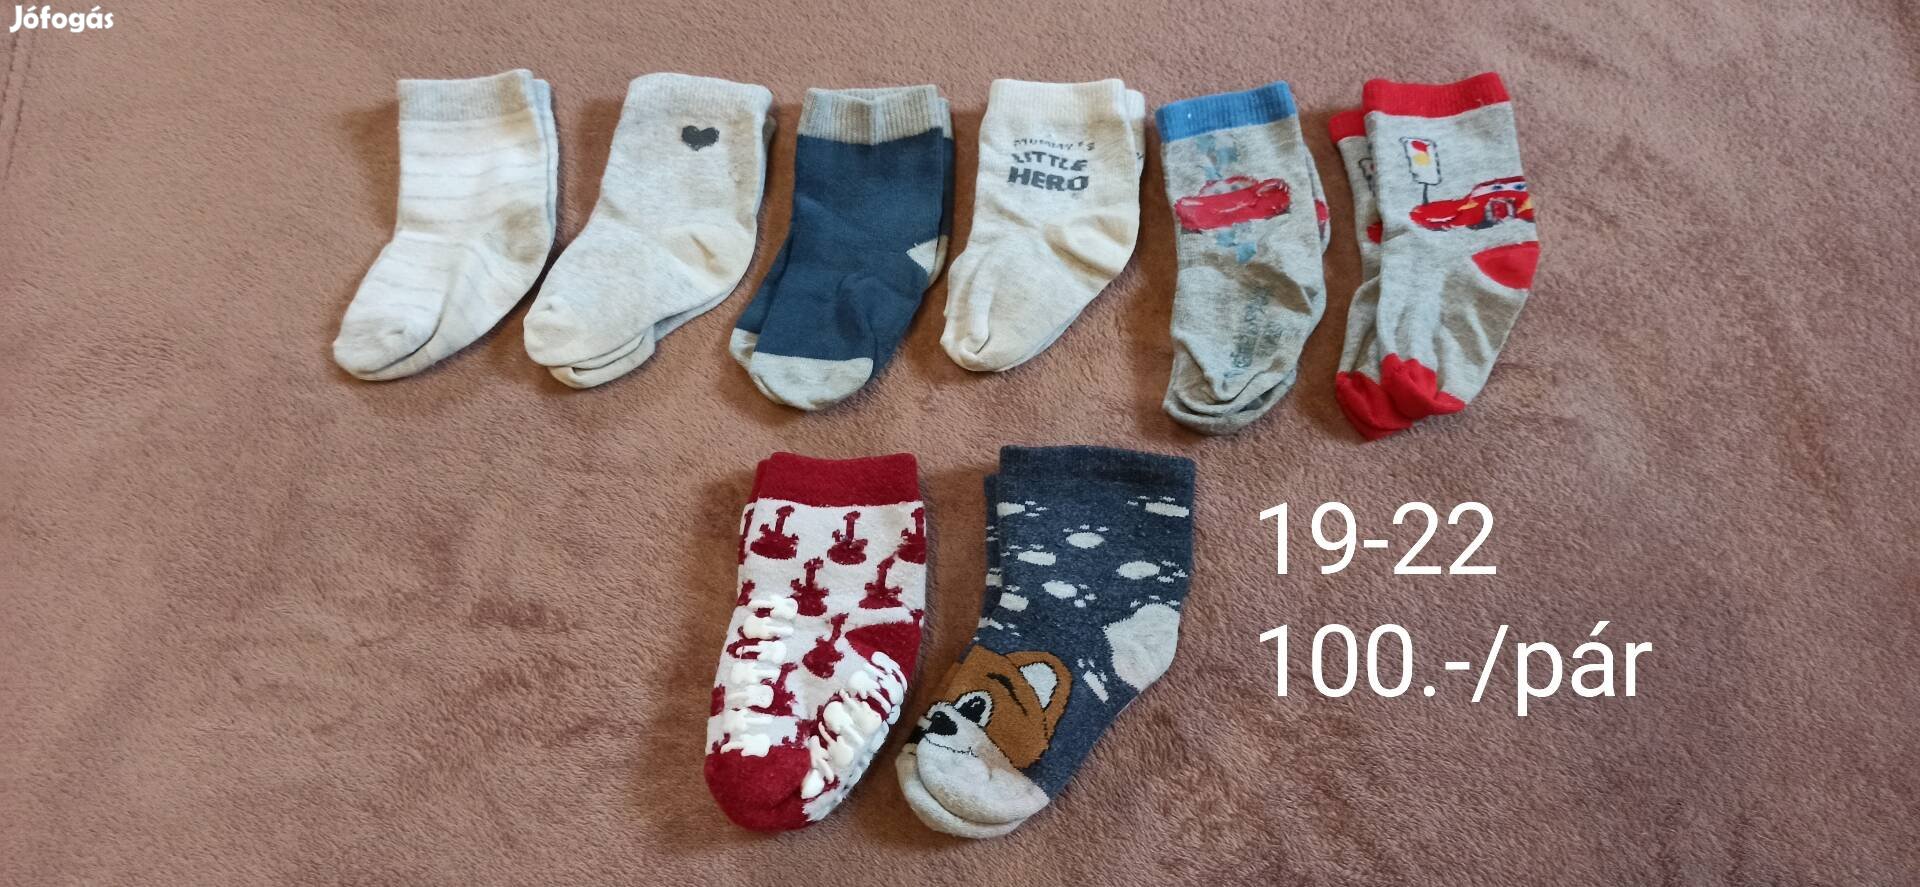 19-22 méretű zoknicsomag